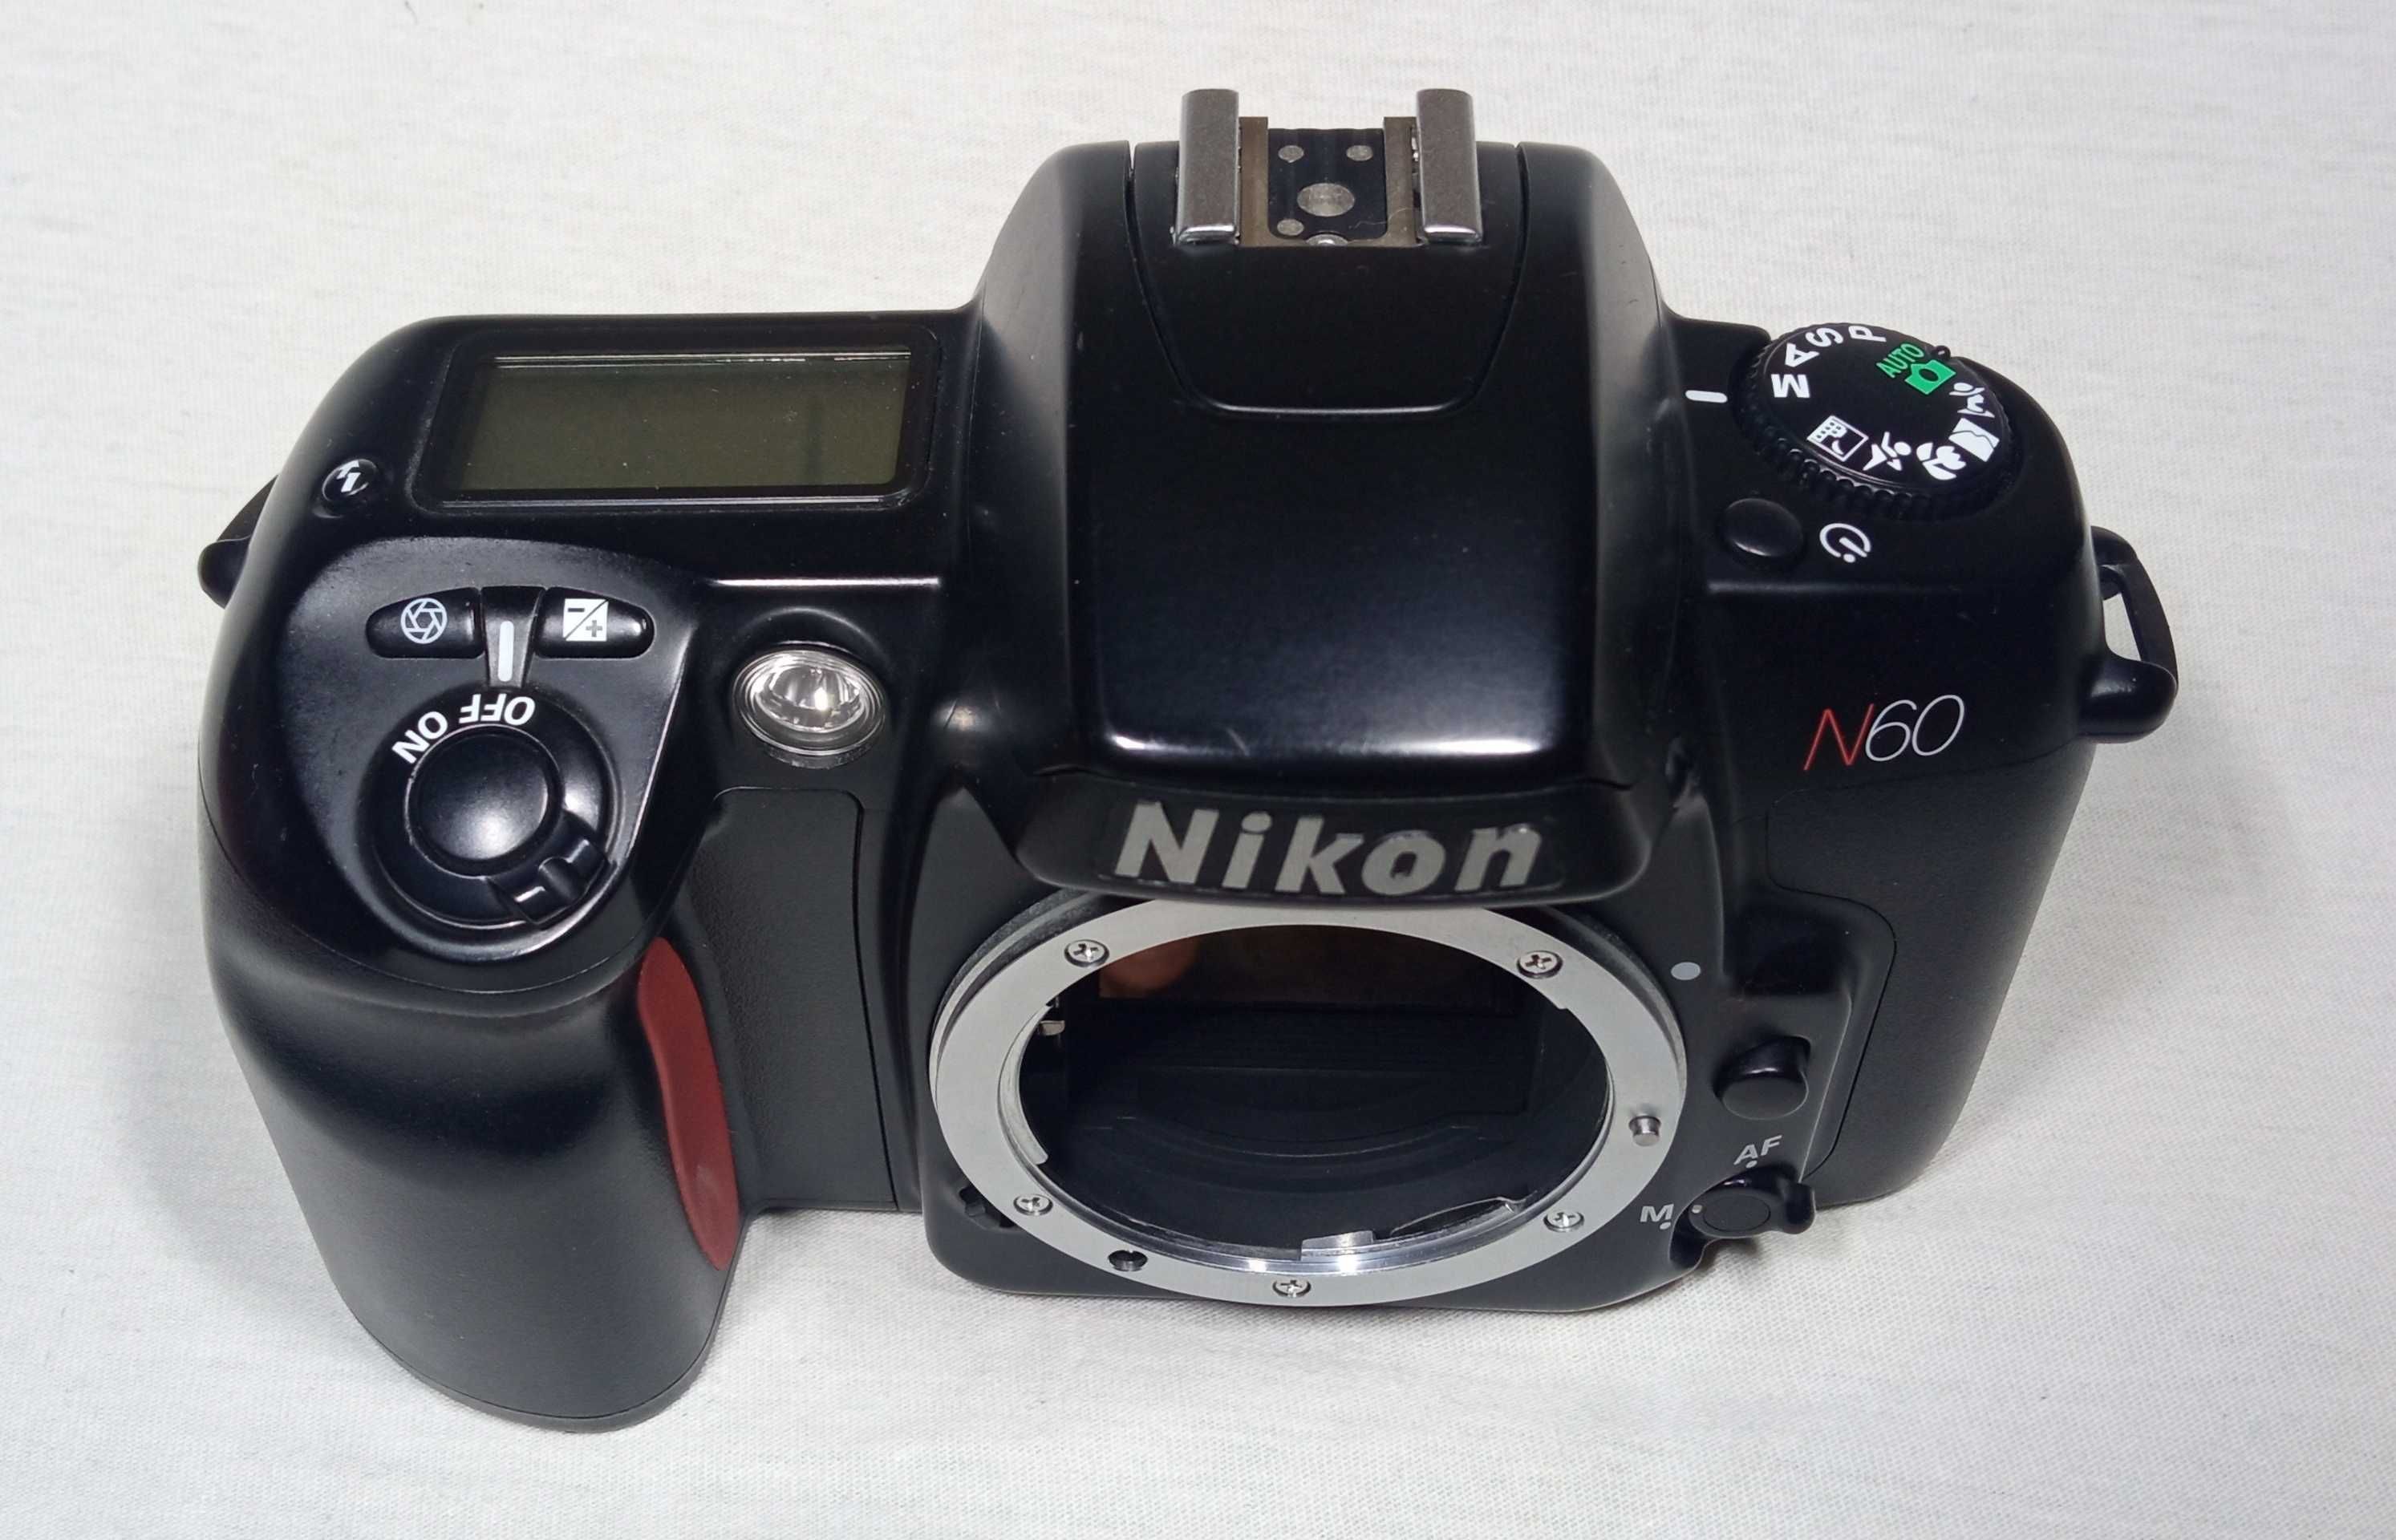 Пленочный фотоаппарат Nikon F60 N60 65 (Data) автофокусный